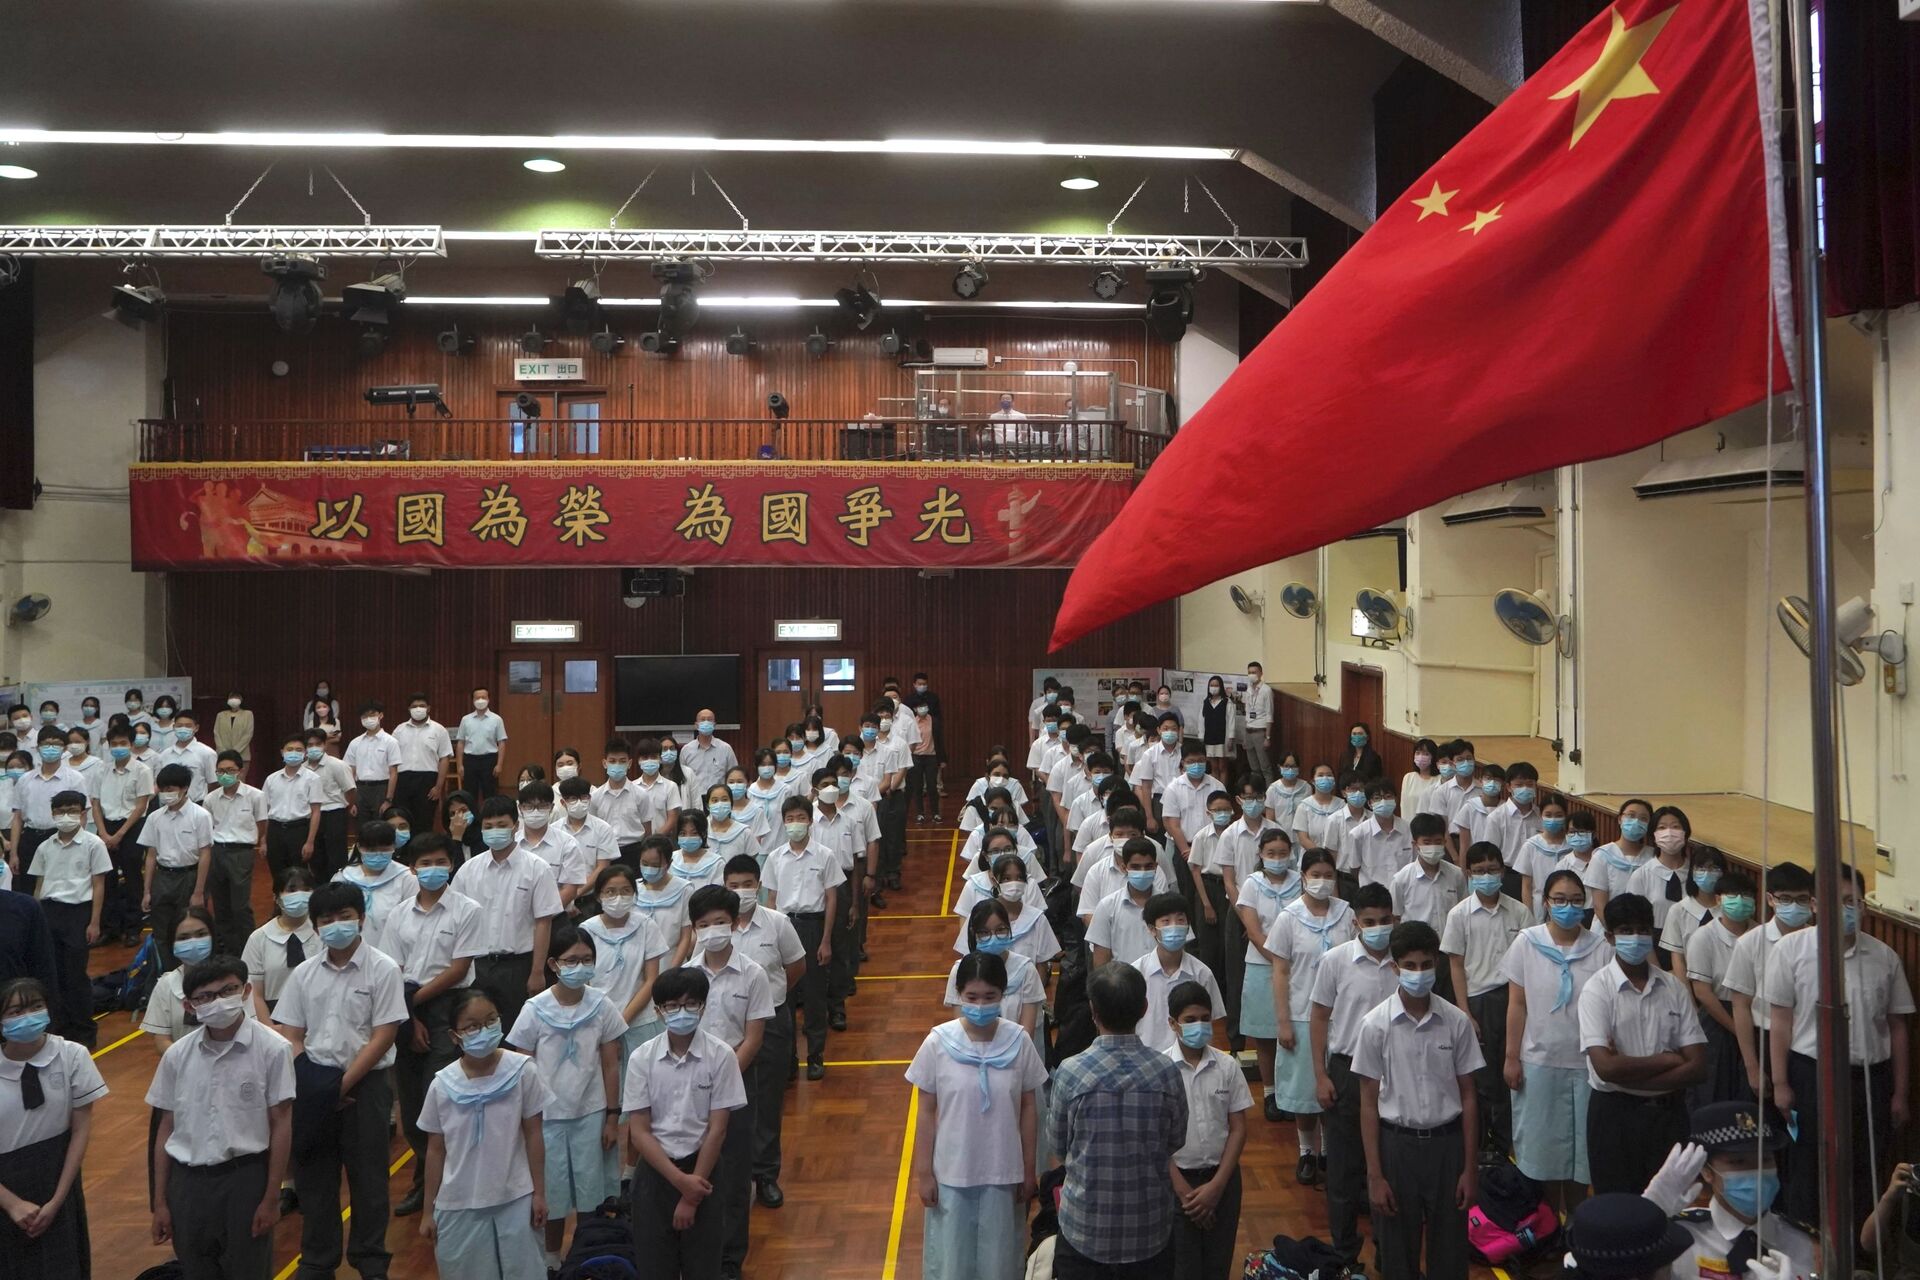 Chega ao Brasil a 1ª escola chinesa: uma história sobre excelência, superação e soft power (VÍDEO) - Sputnik Brasil, 1920, 11.05.2021